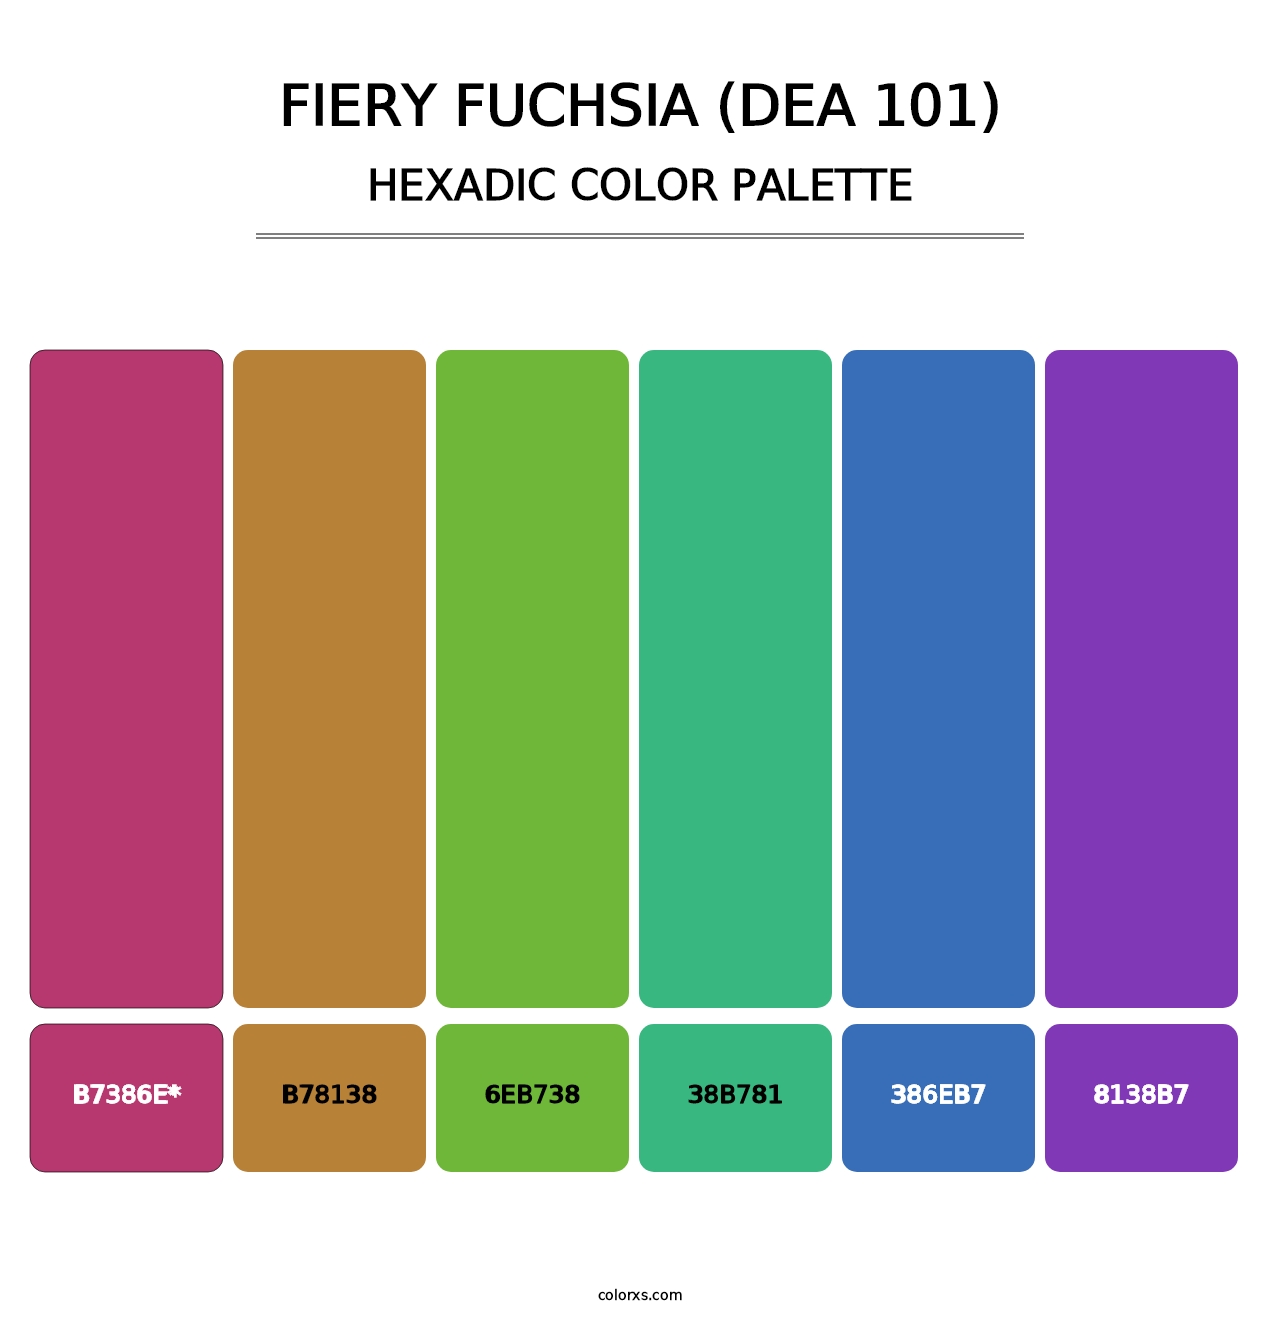 Fiery Fuchsia (DEA 101) - Hexadic Color Palette